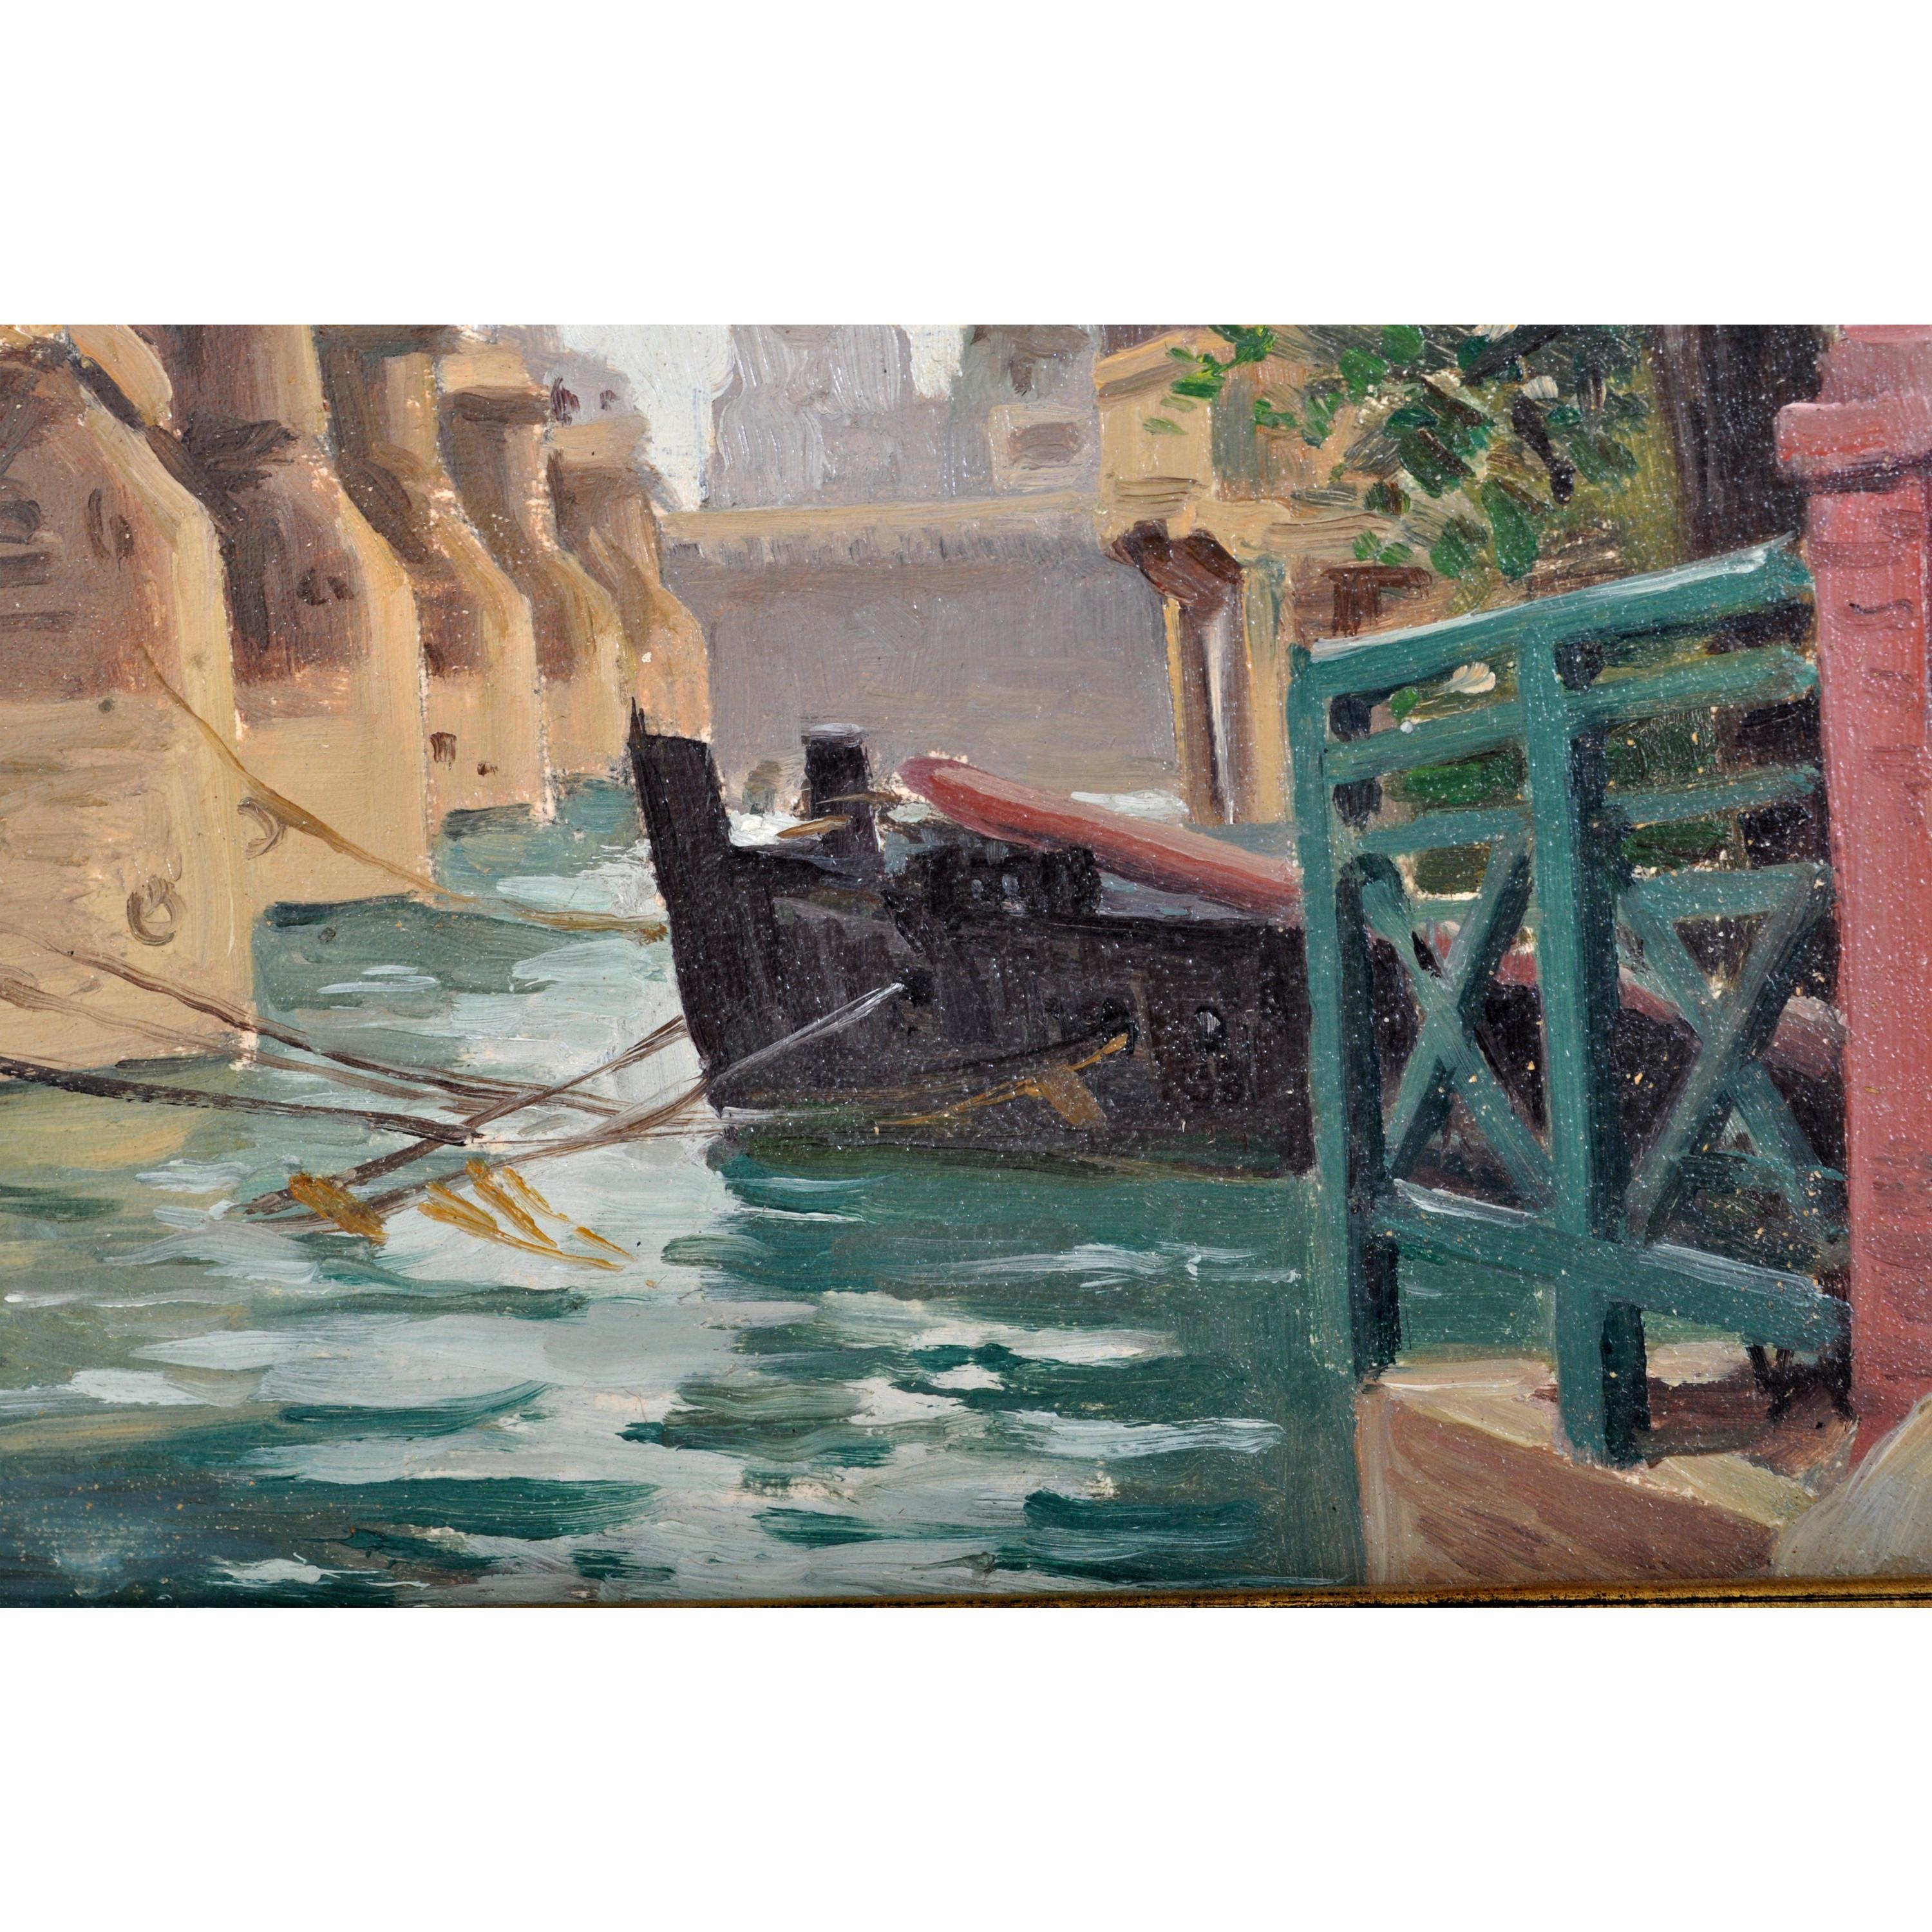 Antique French Impressionist Oil Painting Pont Neuf Paris by Paul de Frick 1900 - Brown Landscape Painting by PAUL DE FRICK